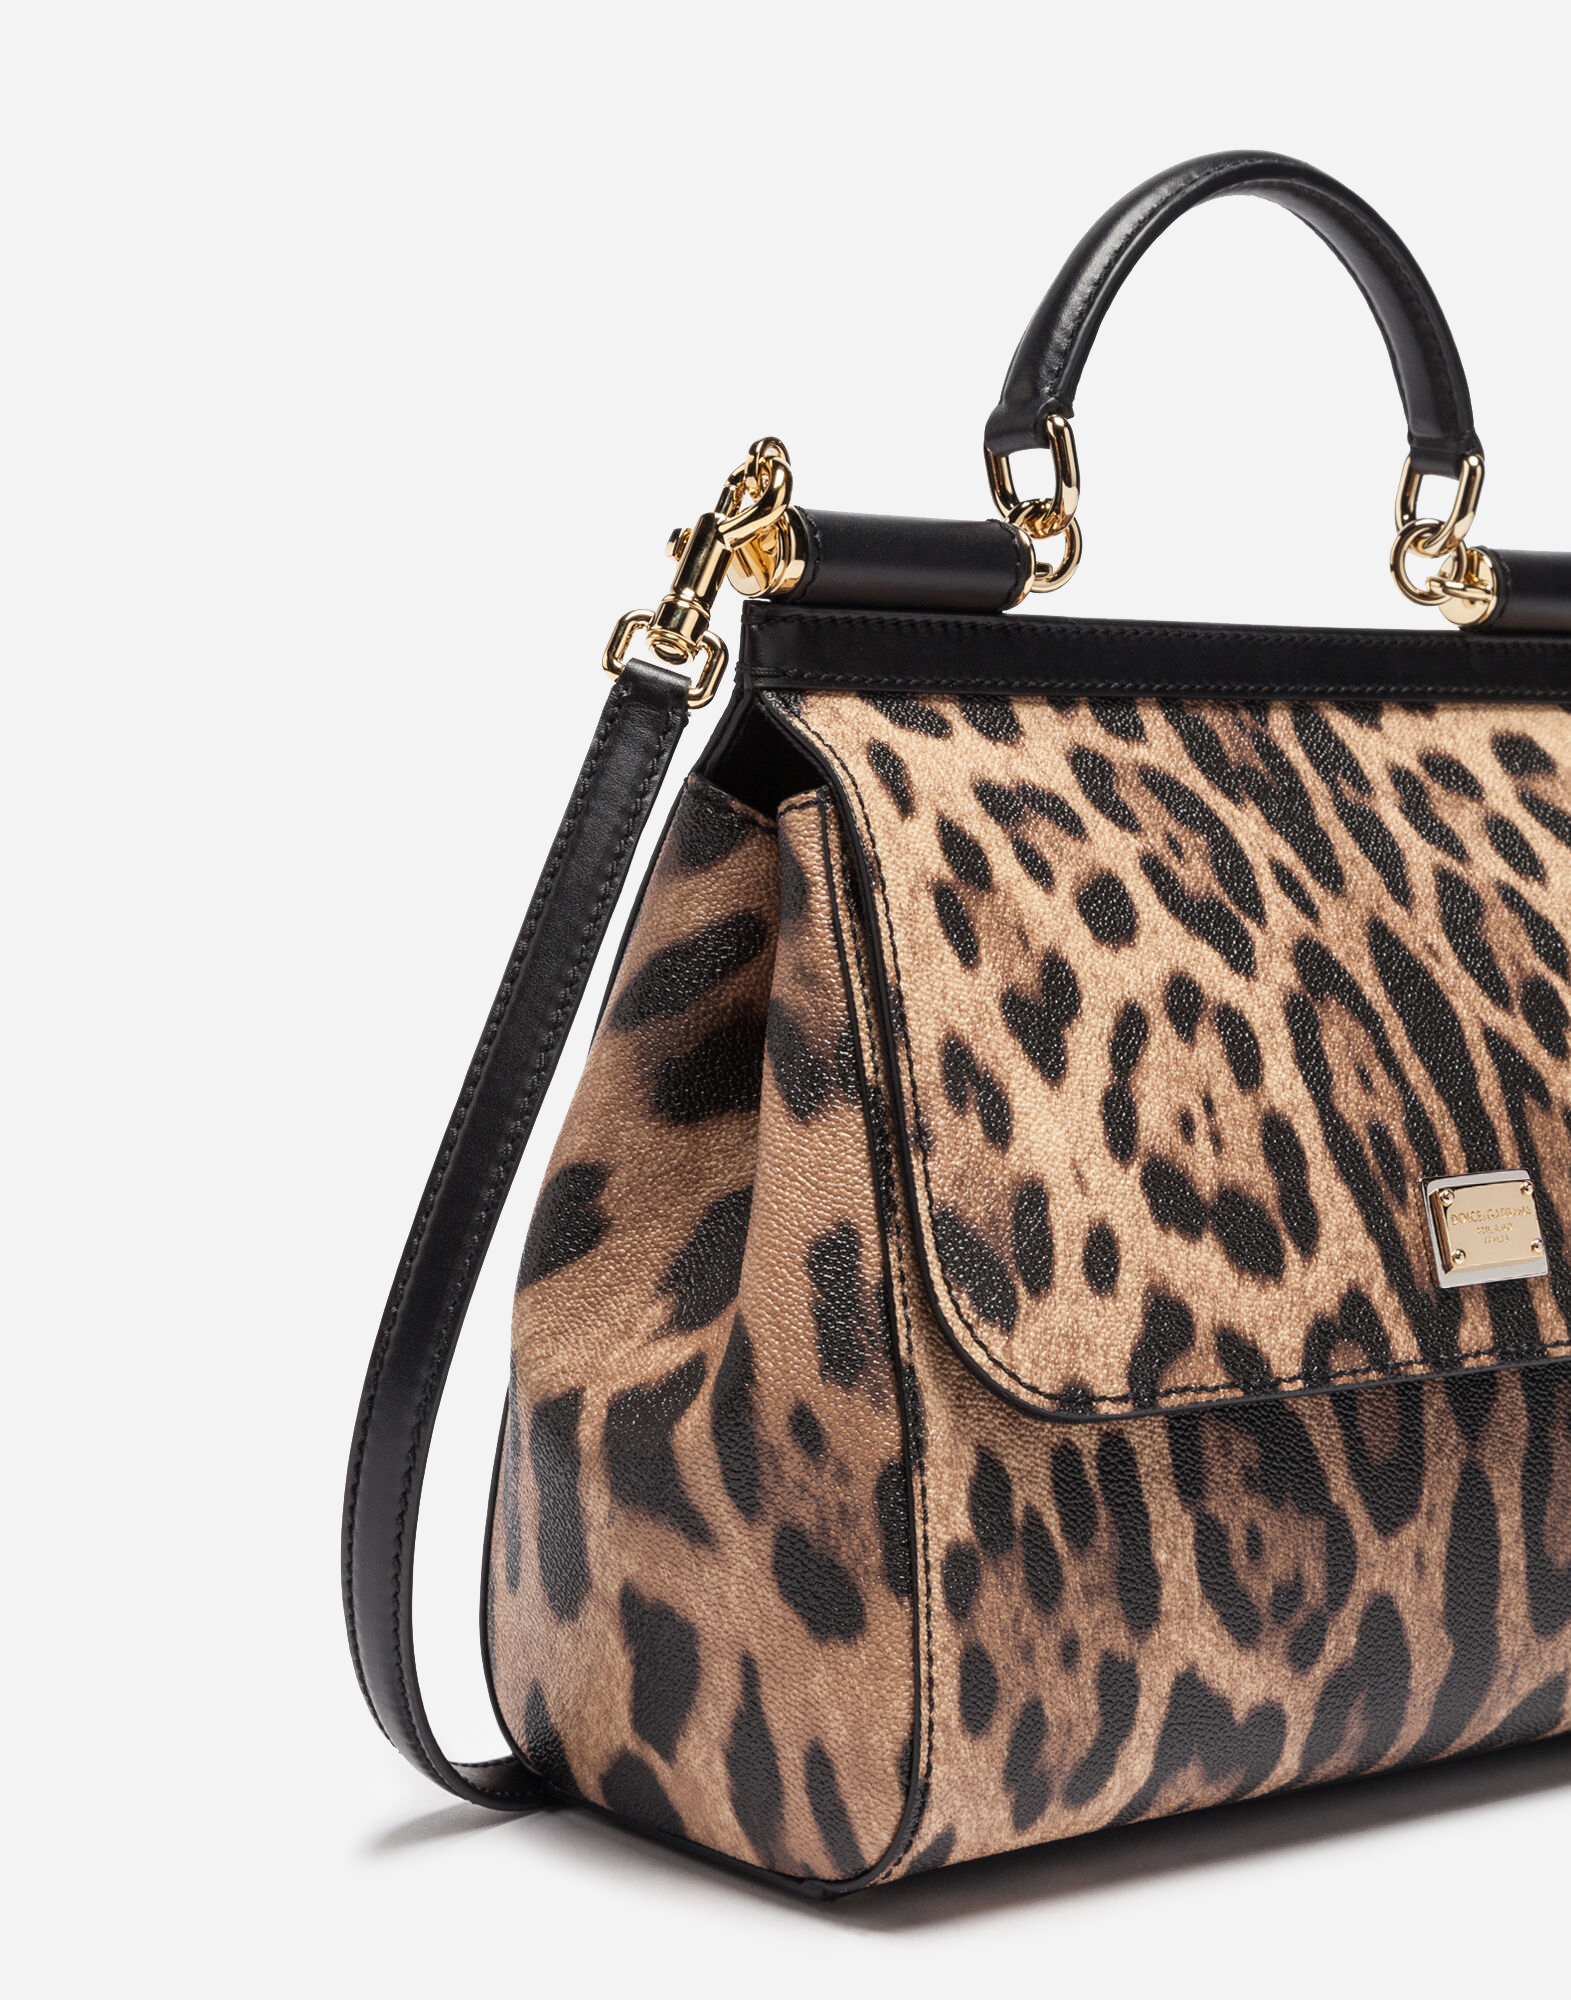 dolce and gabbana leopard purse